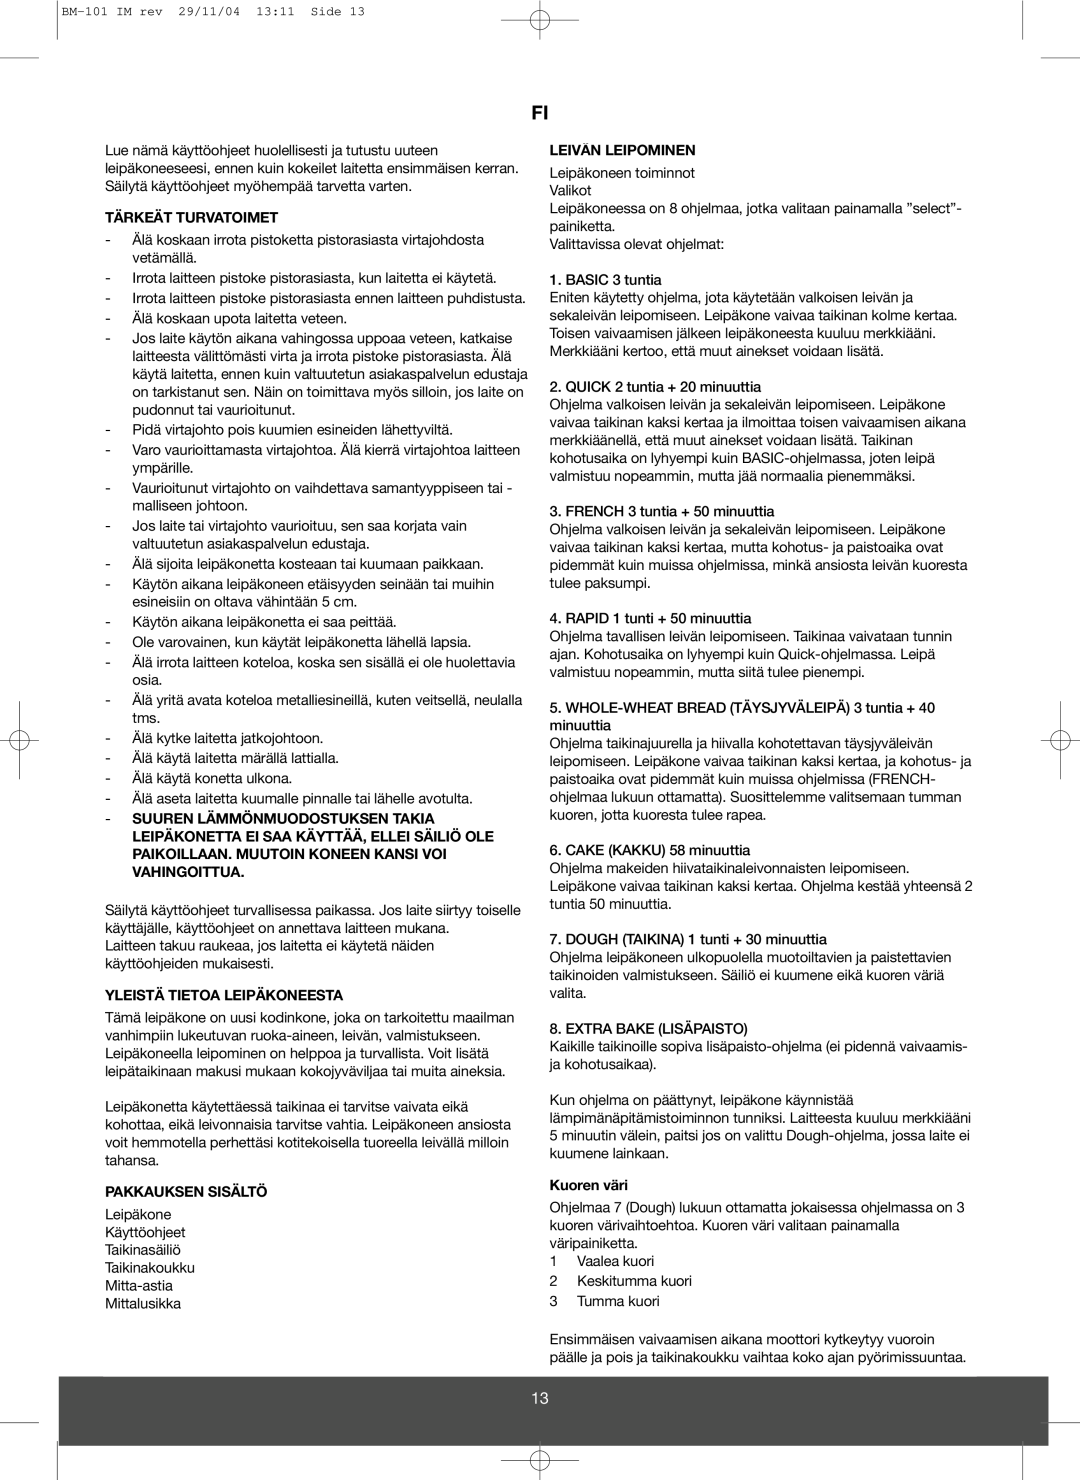 Melissa 643-032 Tärkeät Turvatoimet, Yleistä Tietoa Leipäkoneesta, Pakkauksen Sisältö, Leivän Leipominen, Kuoren väri 